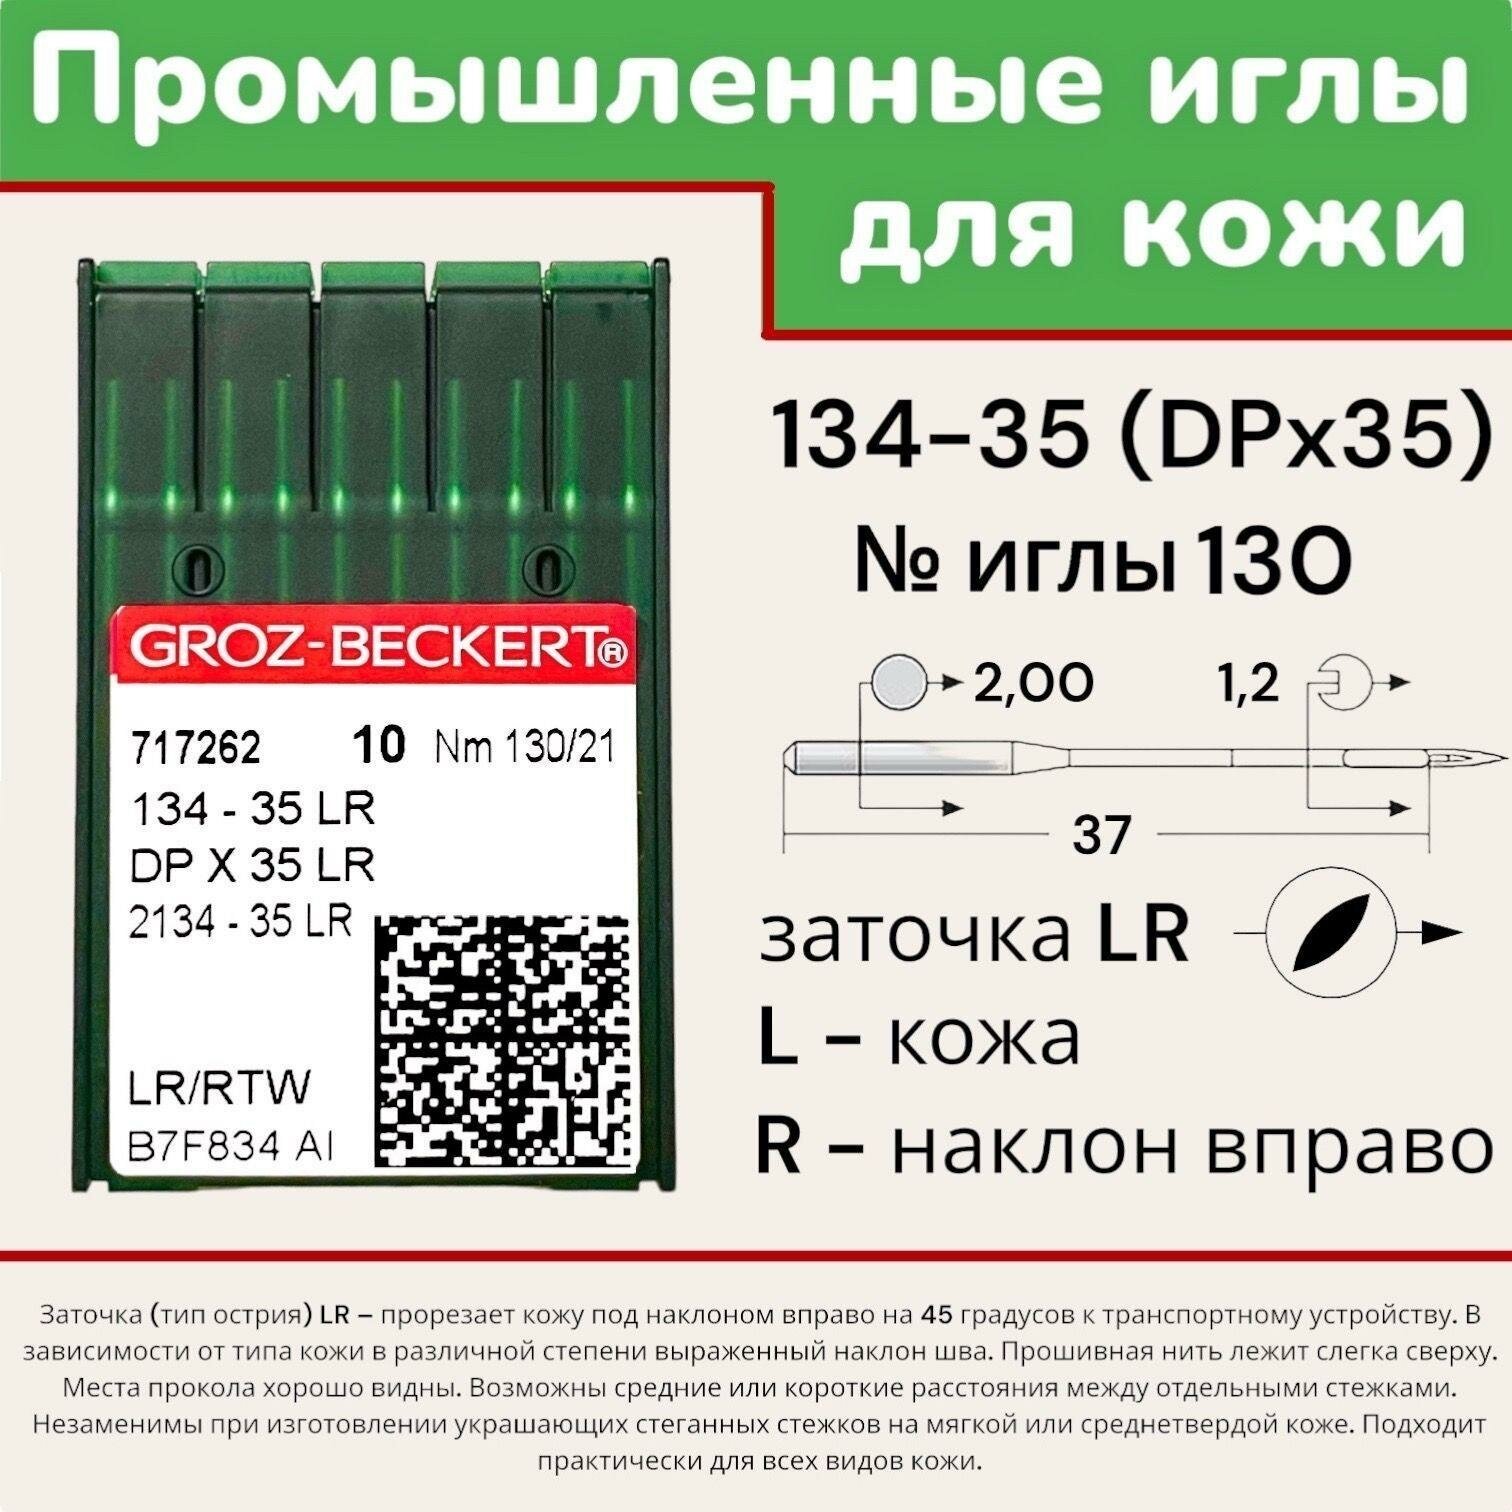 Иглы для промышленных швейных машин DPx35 (134-35) LR №130 Groz-Beckert